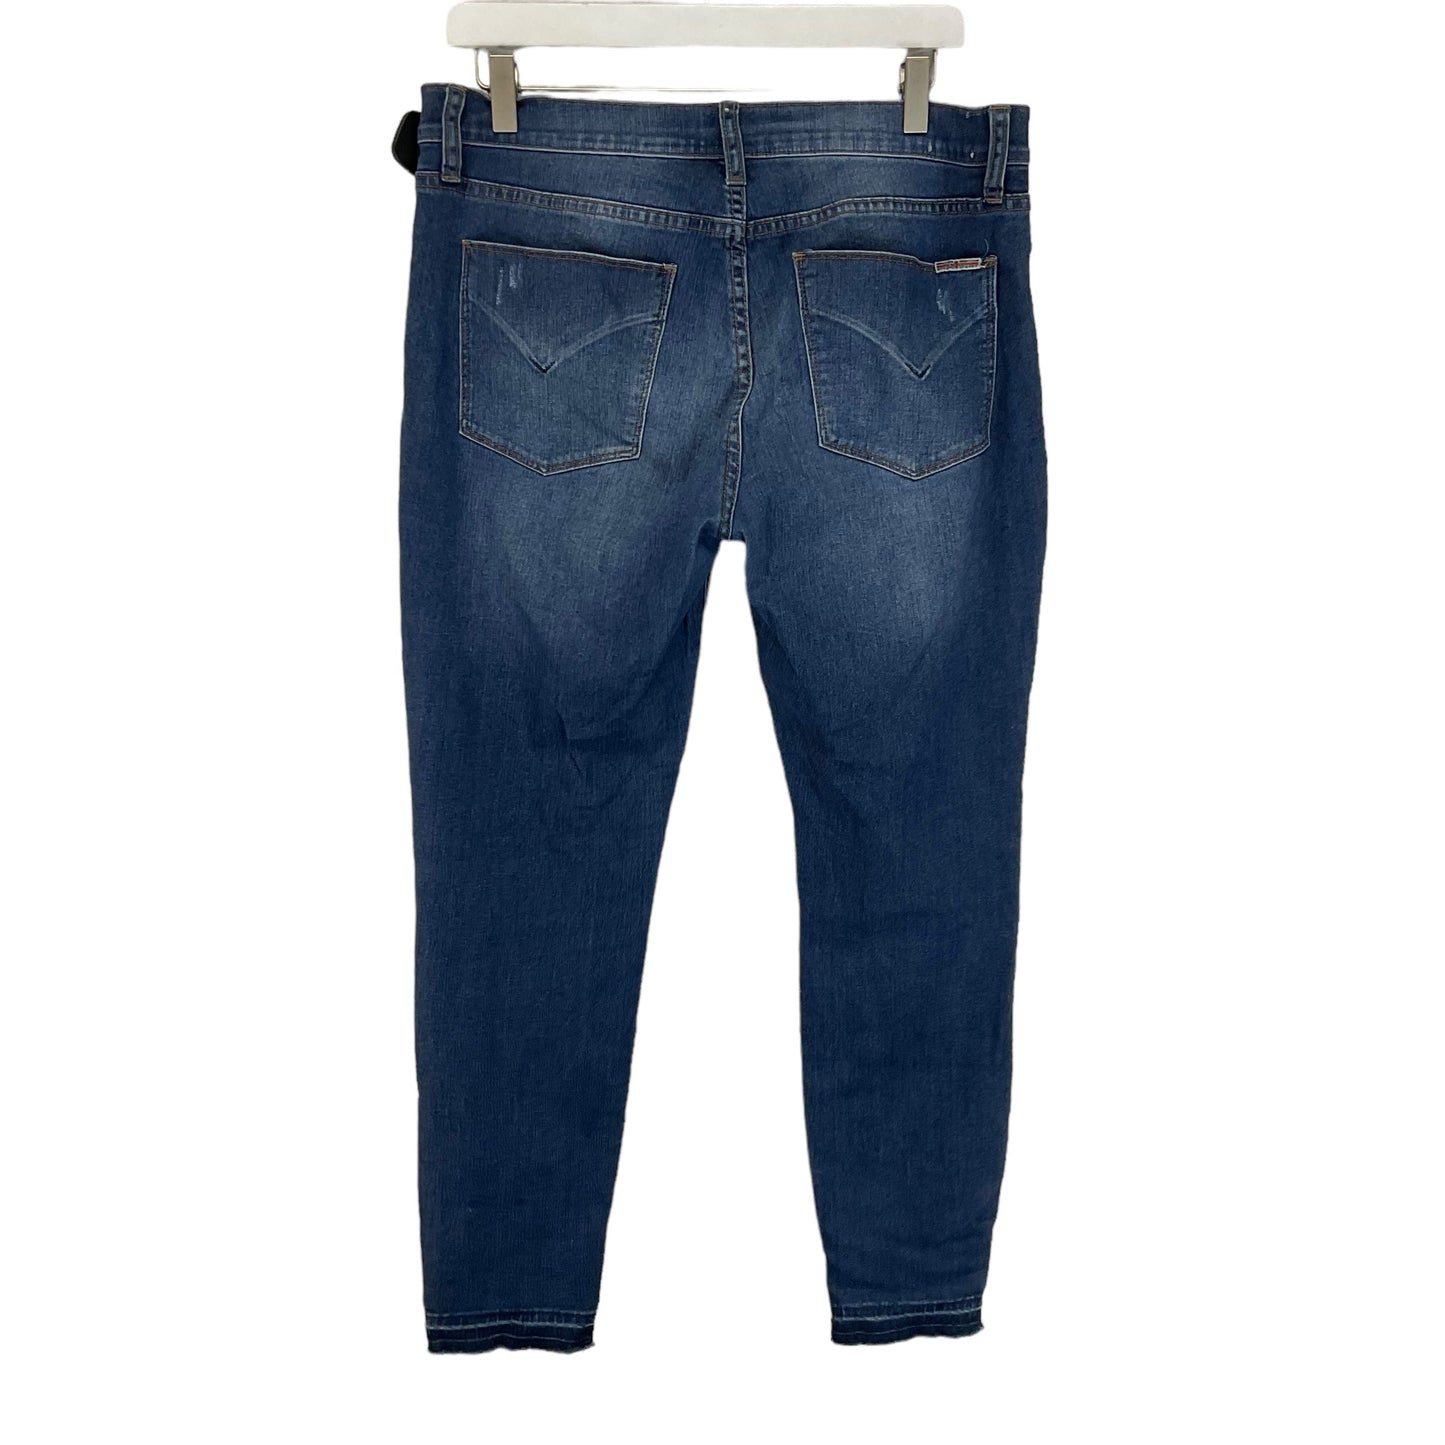 Blue Denim Jeans Designer Hudson, Size 8